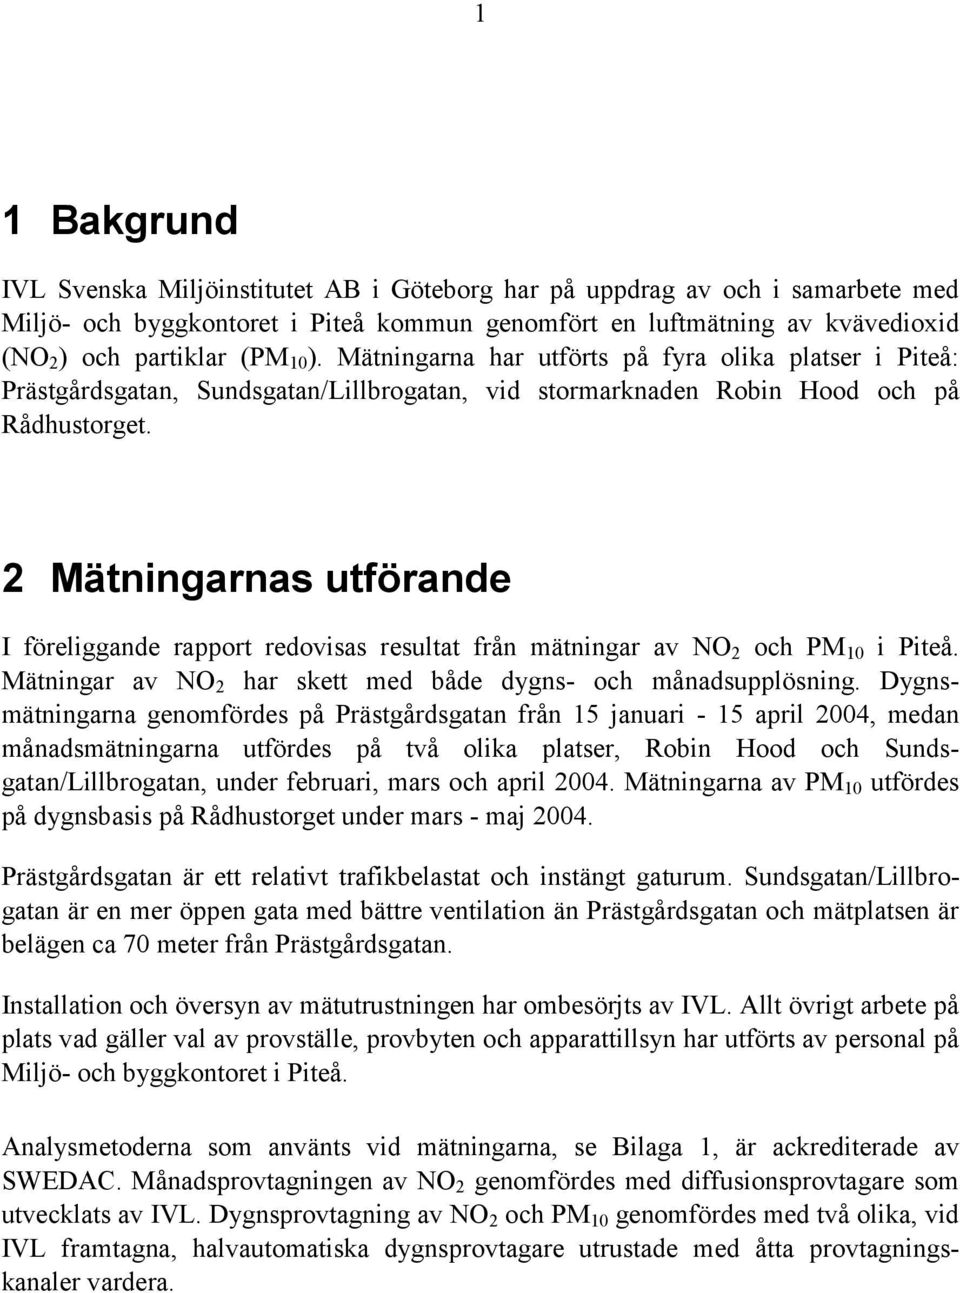 2 Mätningarnas utförande I föreliggande rapport redovisas resultat från mätningar av NO 2 och PM 10 i Piteå. Mätningar av NO 2 har skett med både dygns- och månadsupplösning.